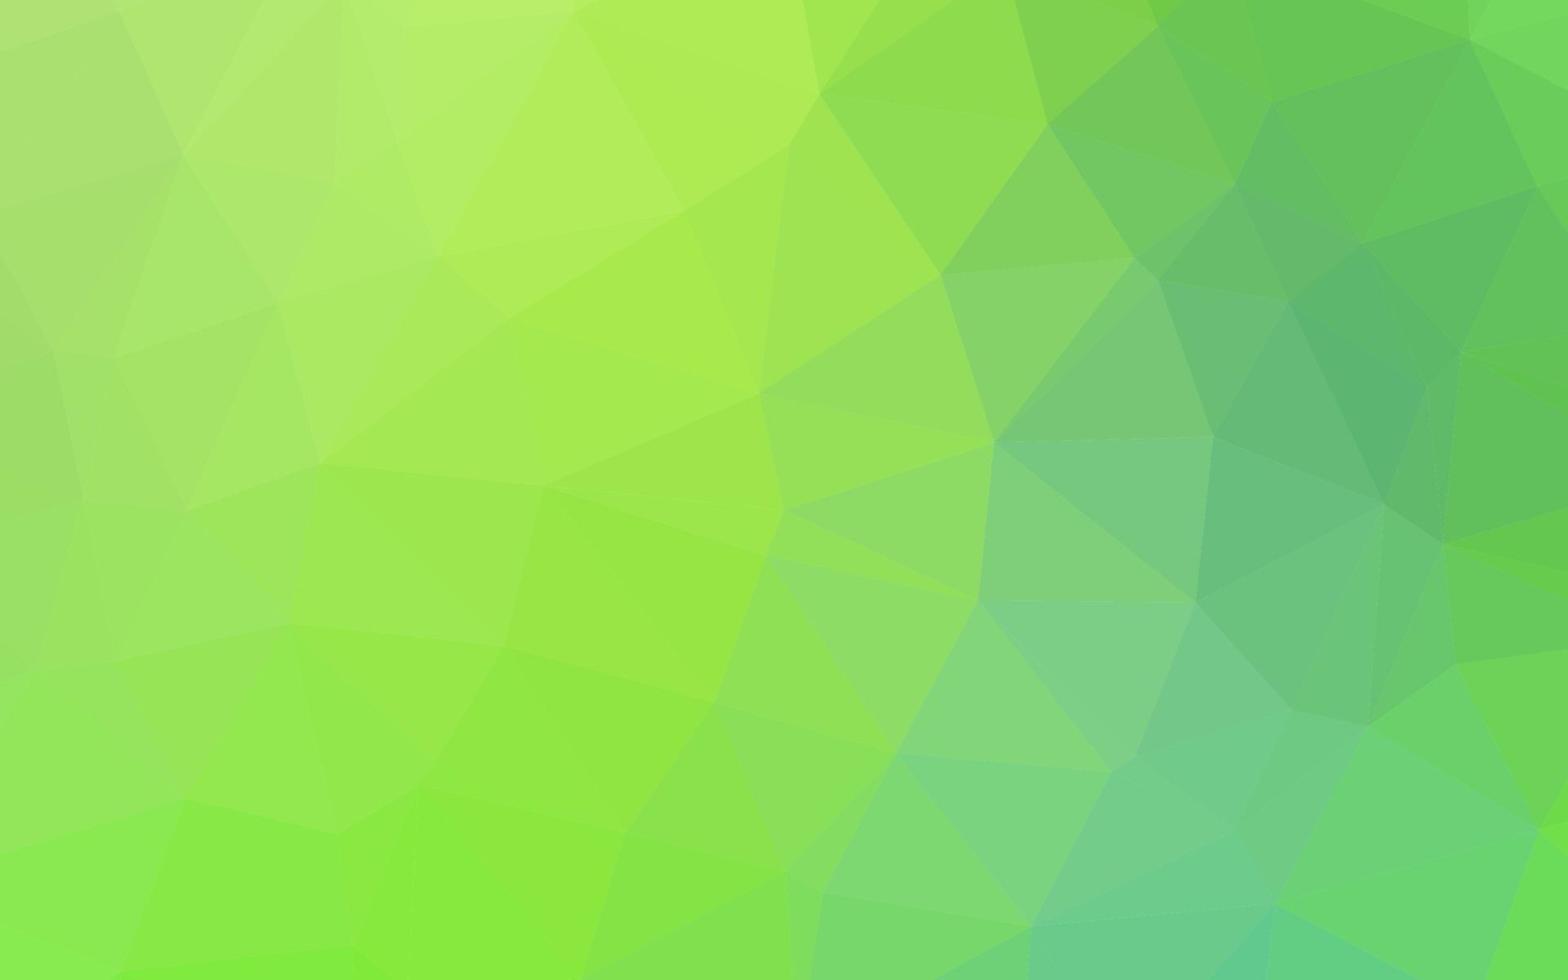 cubierta poligonal abstracta de vector azul claro, verde.